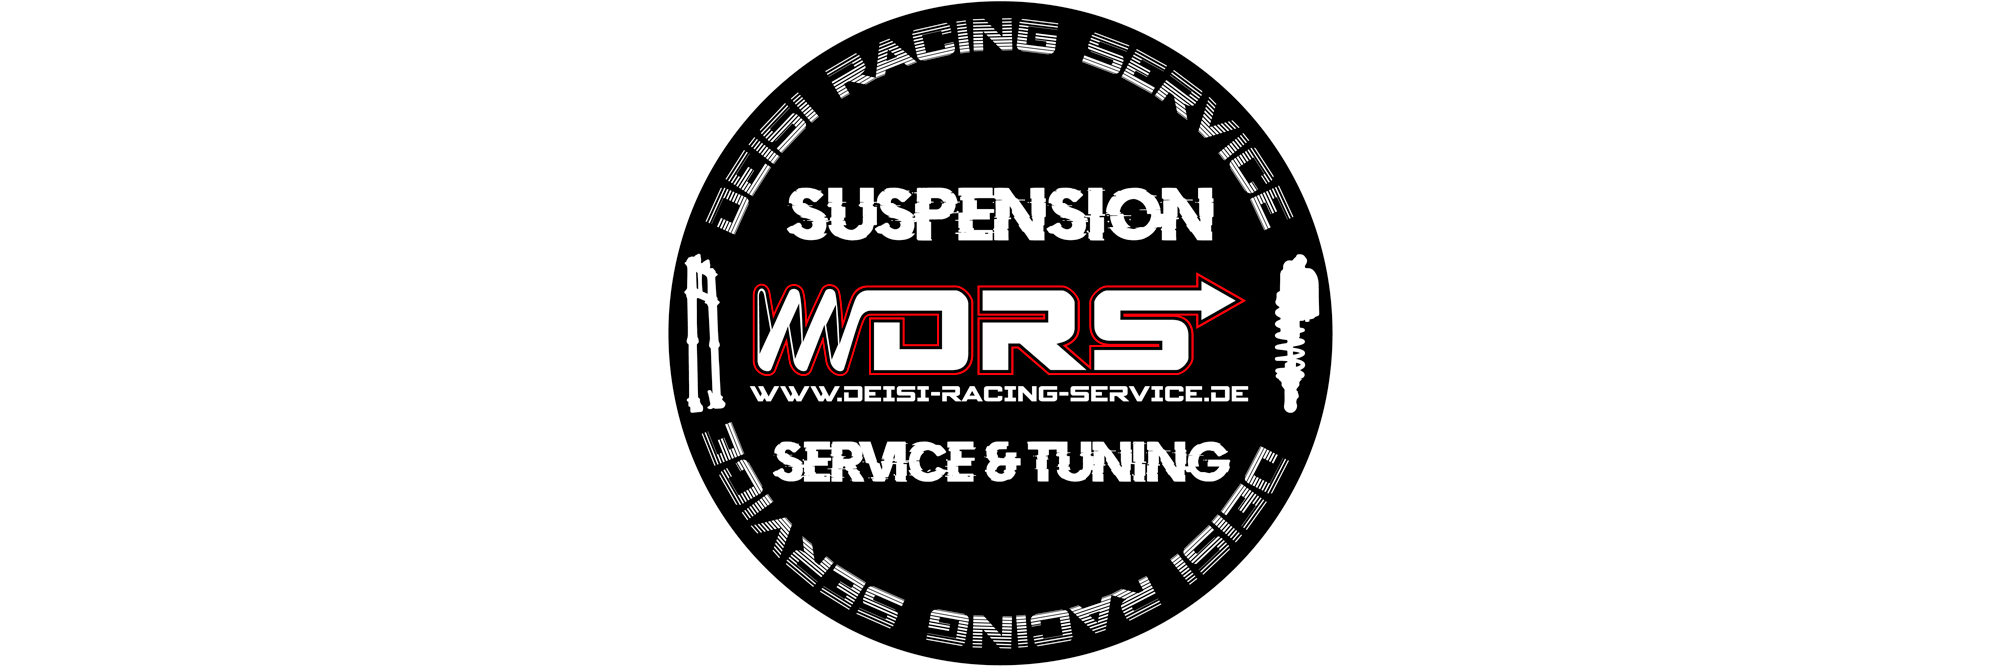 DRS-Suspension Logo rund, Suspension-Service, Suspension-Tuning